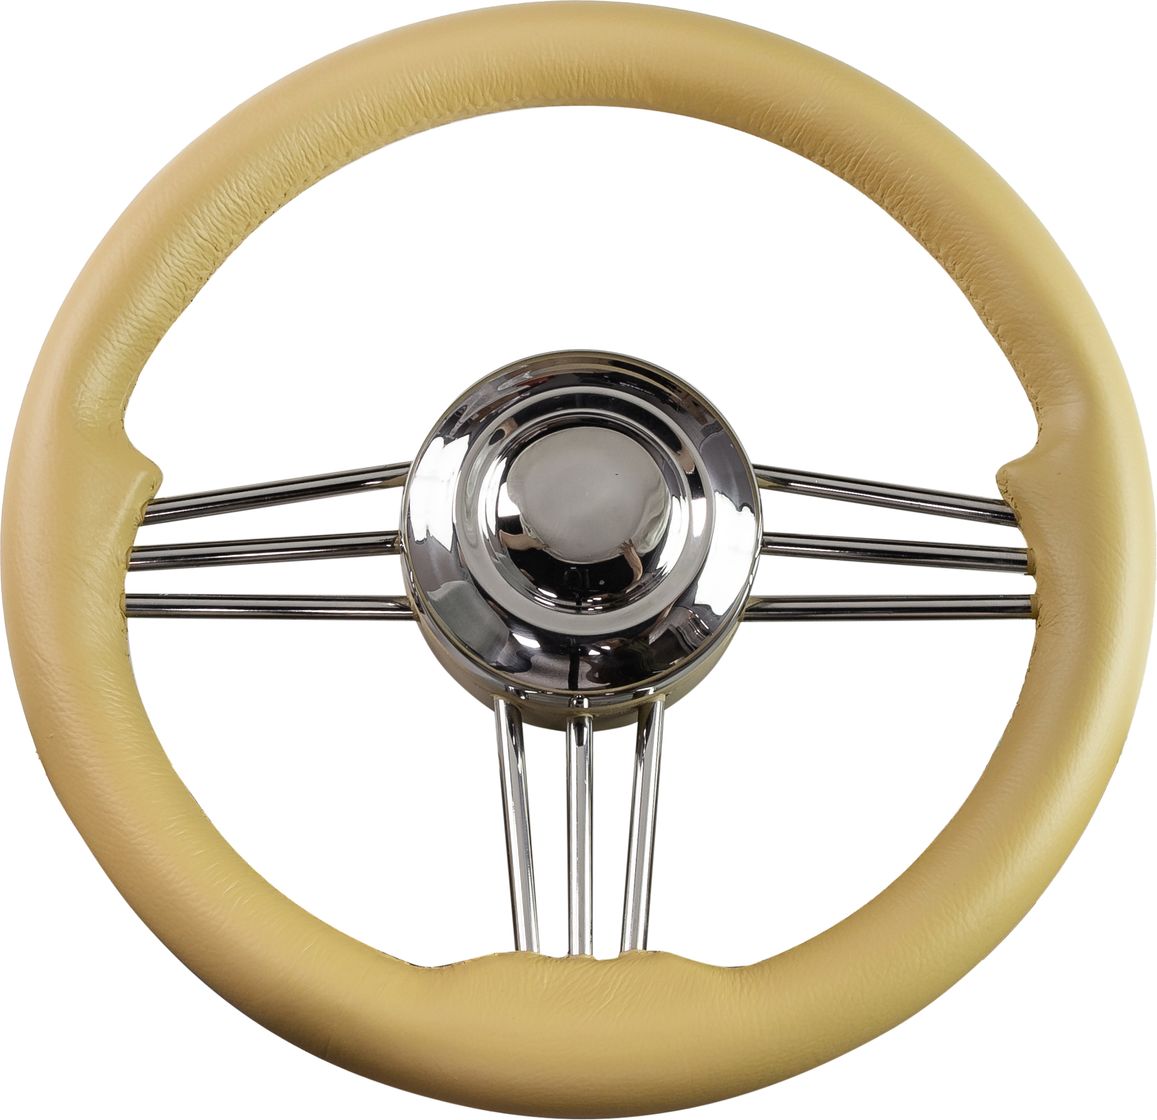 Рулевое колесо Osculati, диаметр 350 мм, цвет кремовый (имитация кожи) 45-173-36 стойки и держатели для акустики quik lok ql95 диаметр трубы 35 мм возможностью наклона колонки